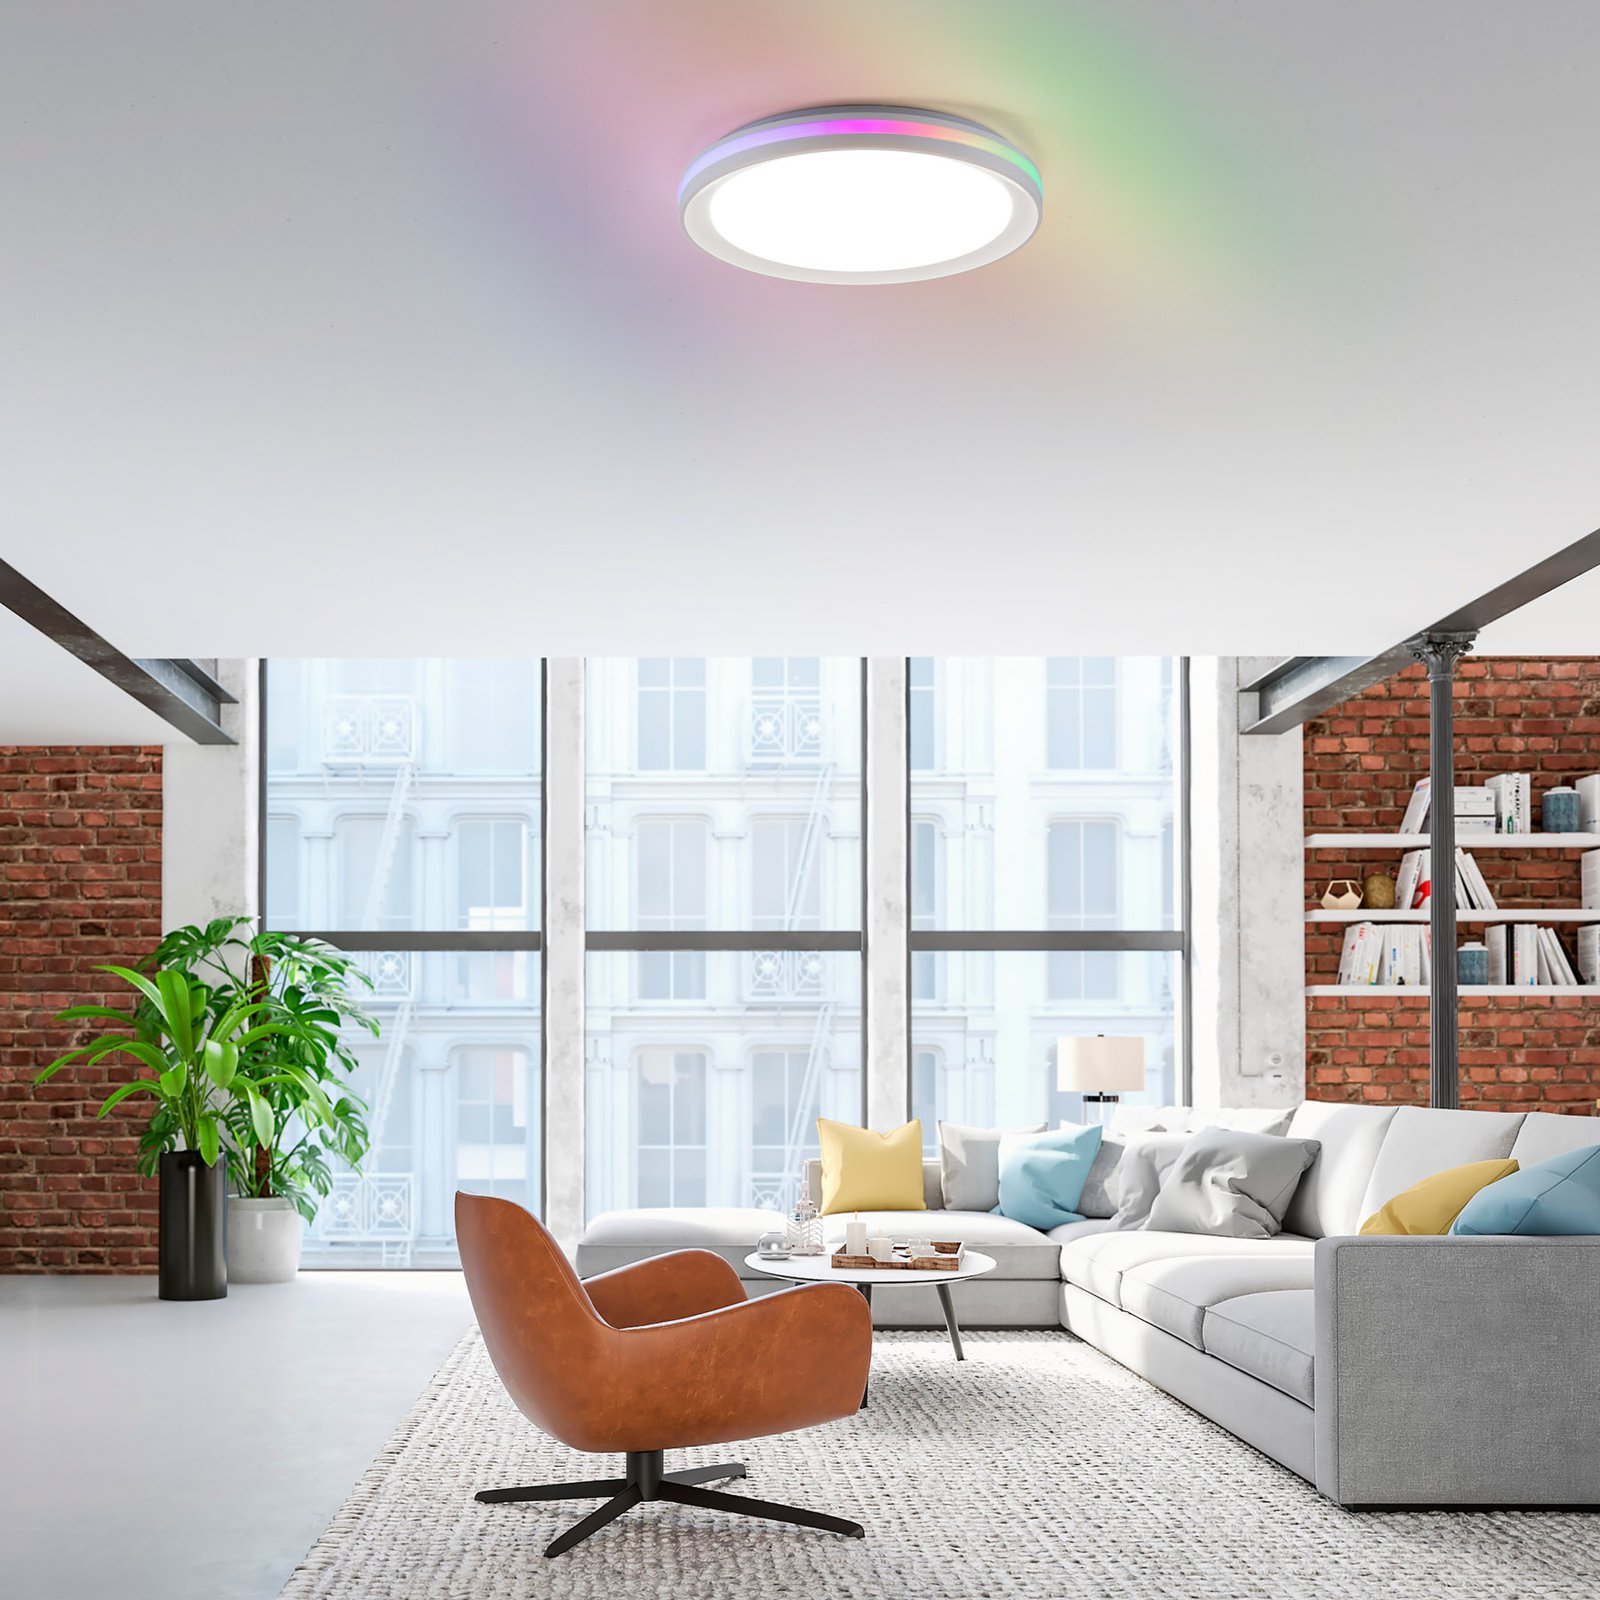 Ribbon LED ceiling light, CCT, RGB